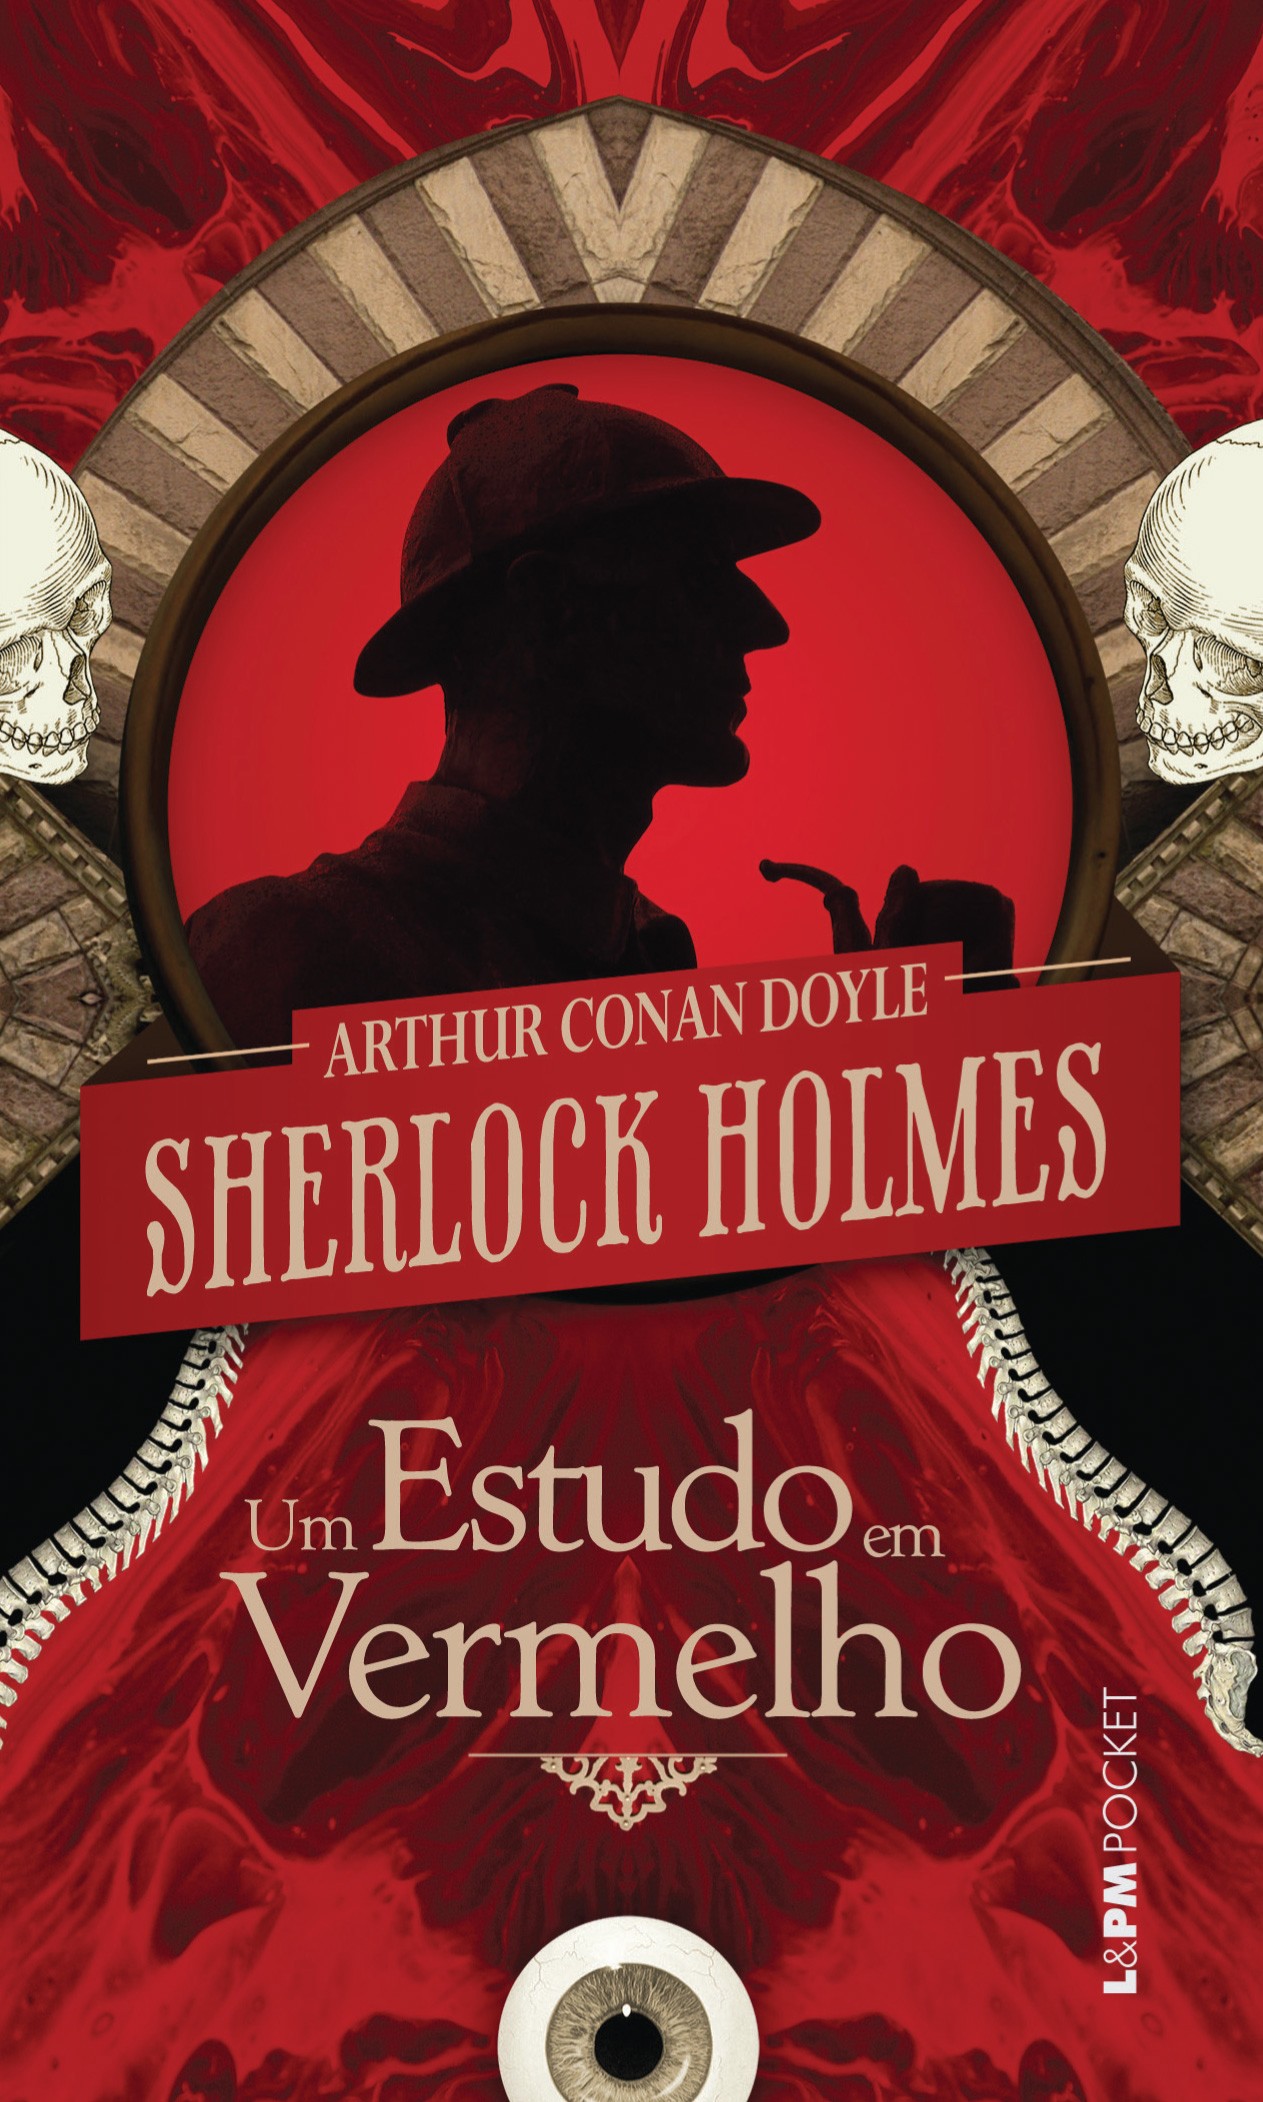 Estudo em Vermelho, Um - Uma Aventura de Sherlock Homes